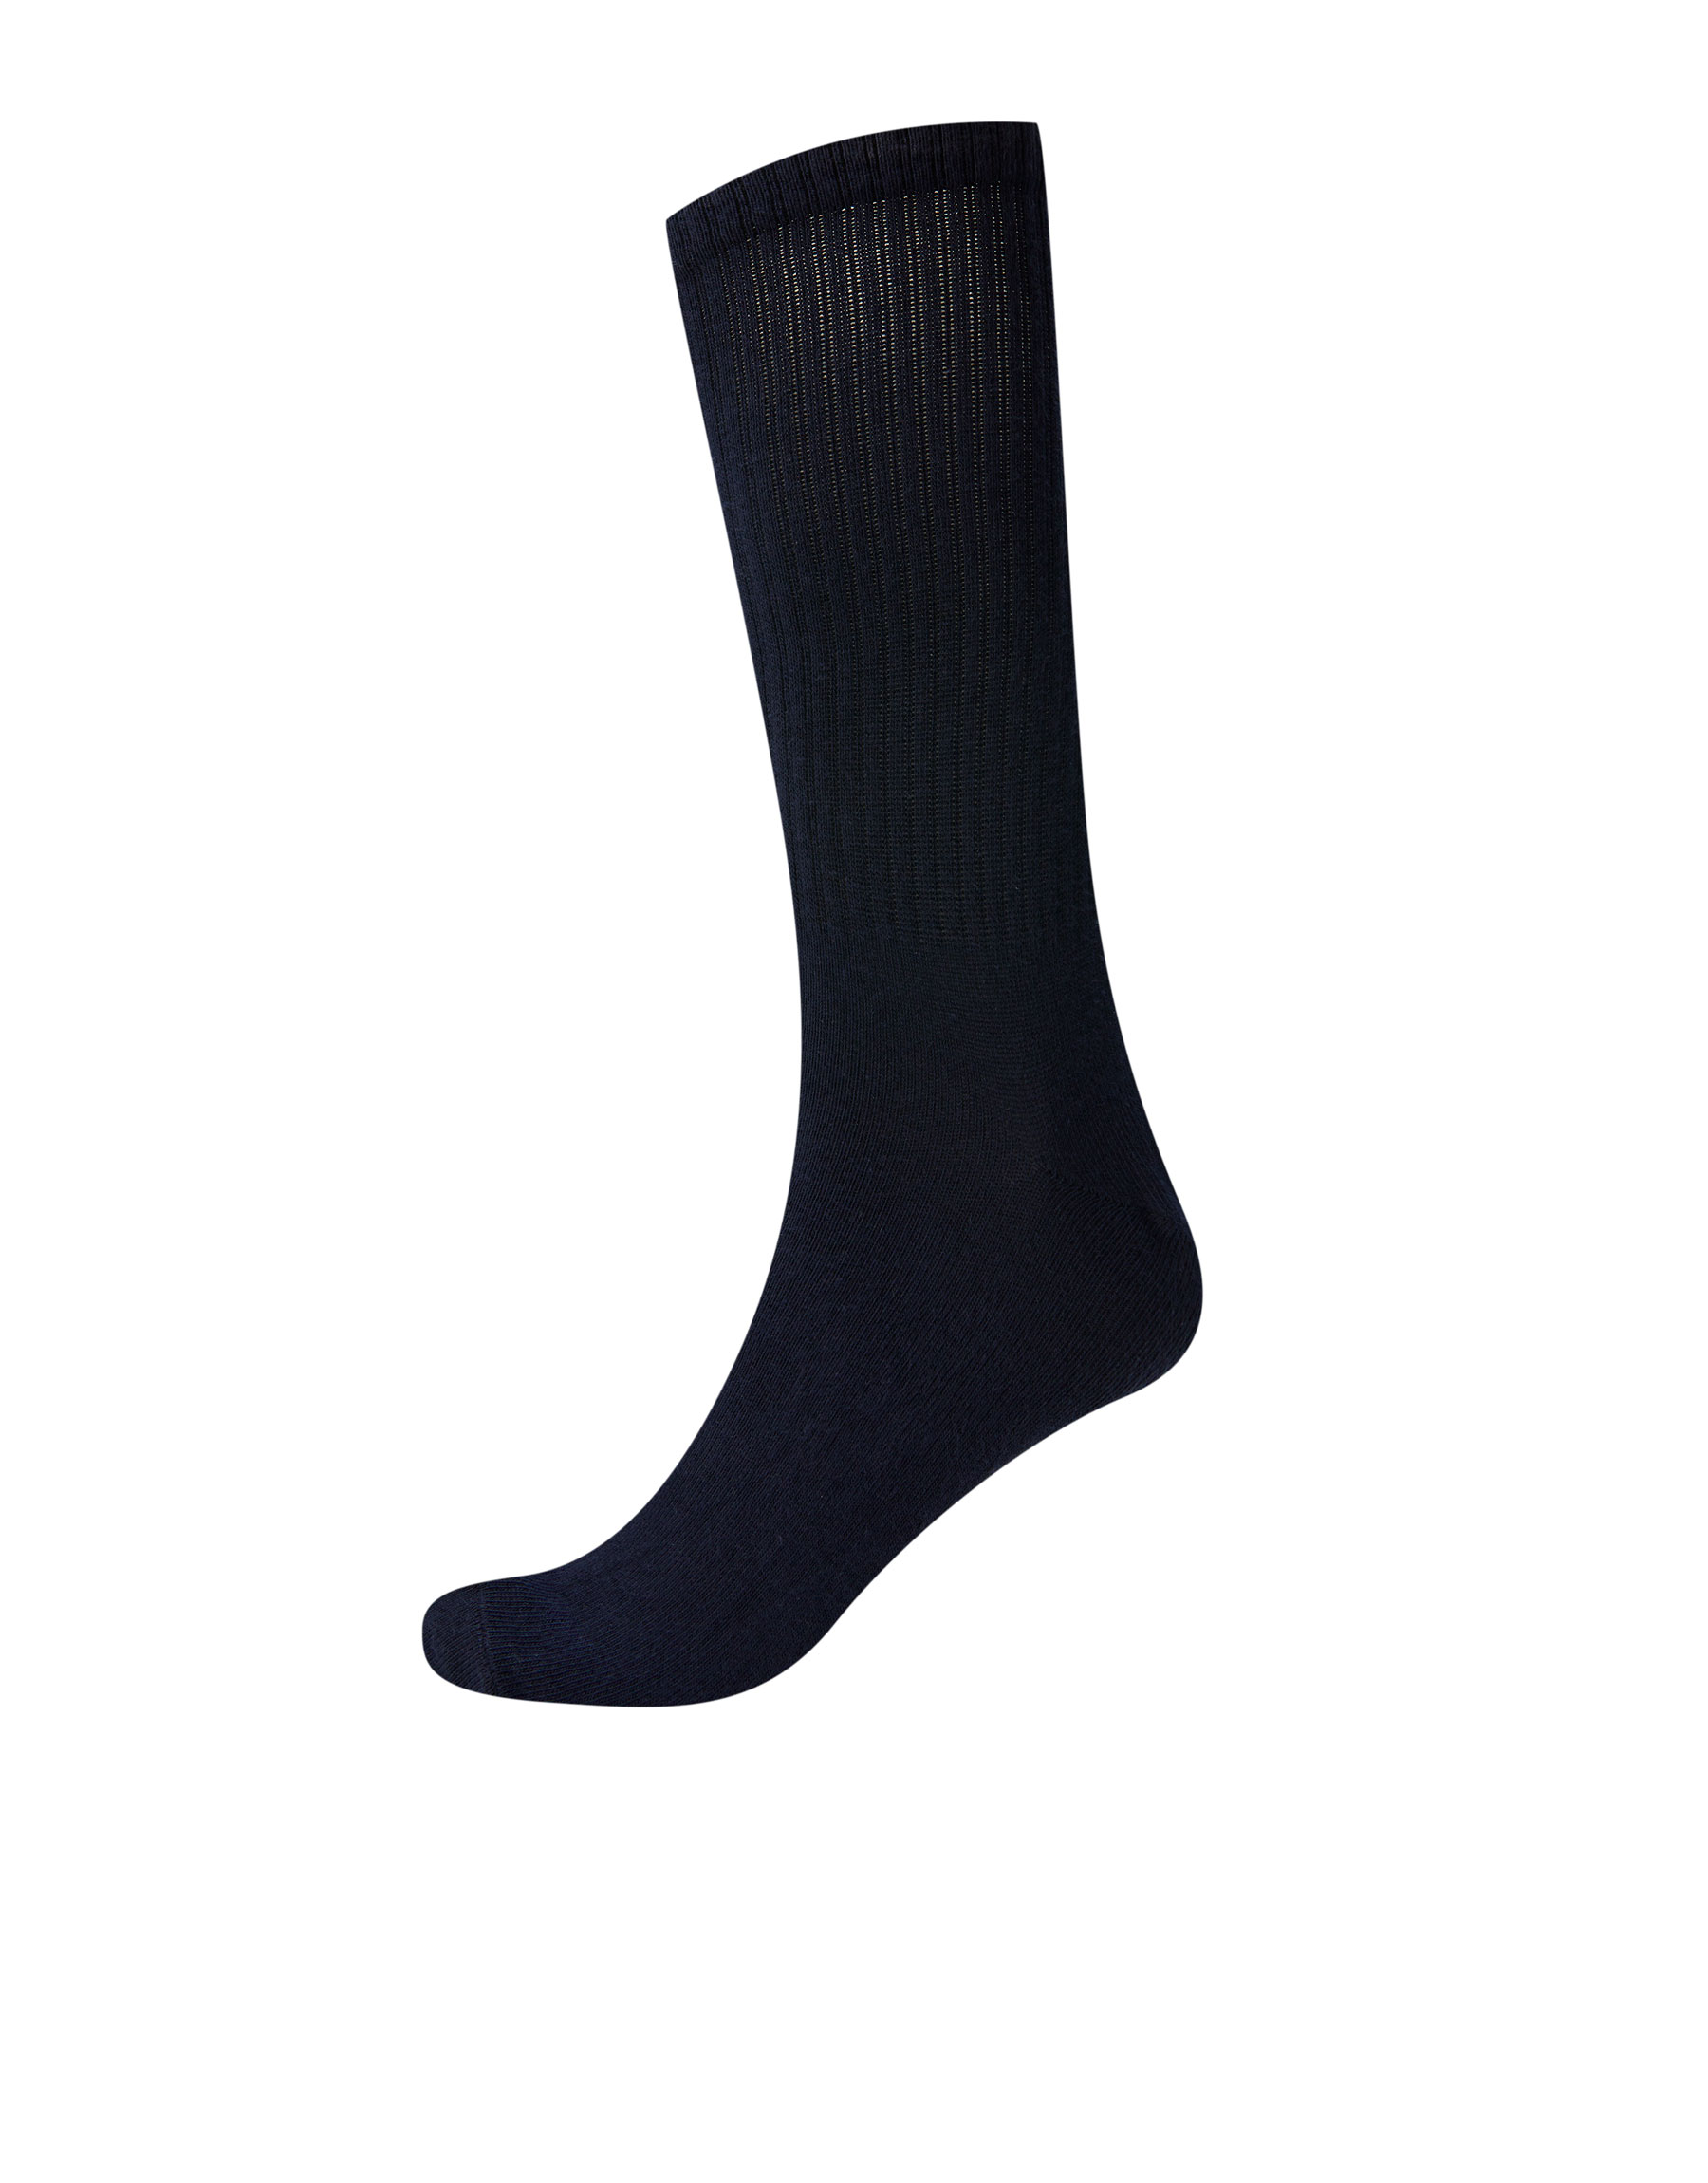 МОРСКОЙ ЯРКО-СИНИЙ Цветные спортивные носки из рифленого трикотажа Pull & Bear